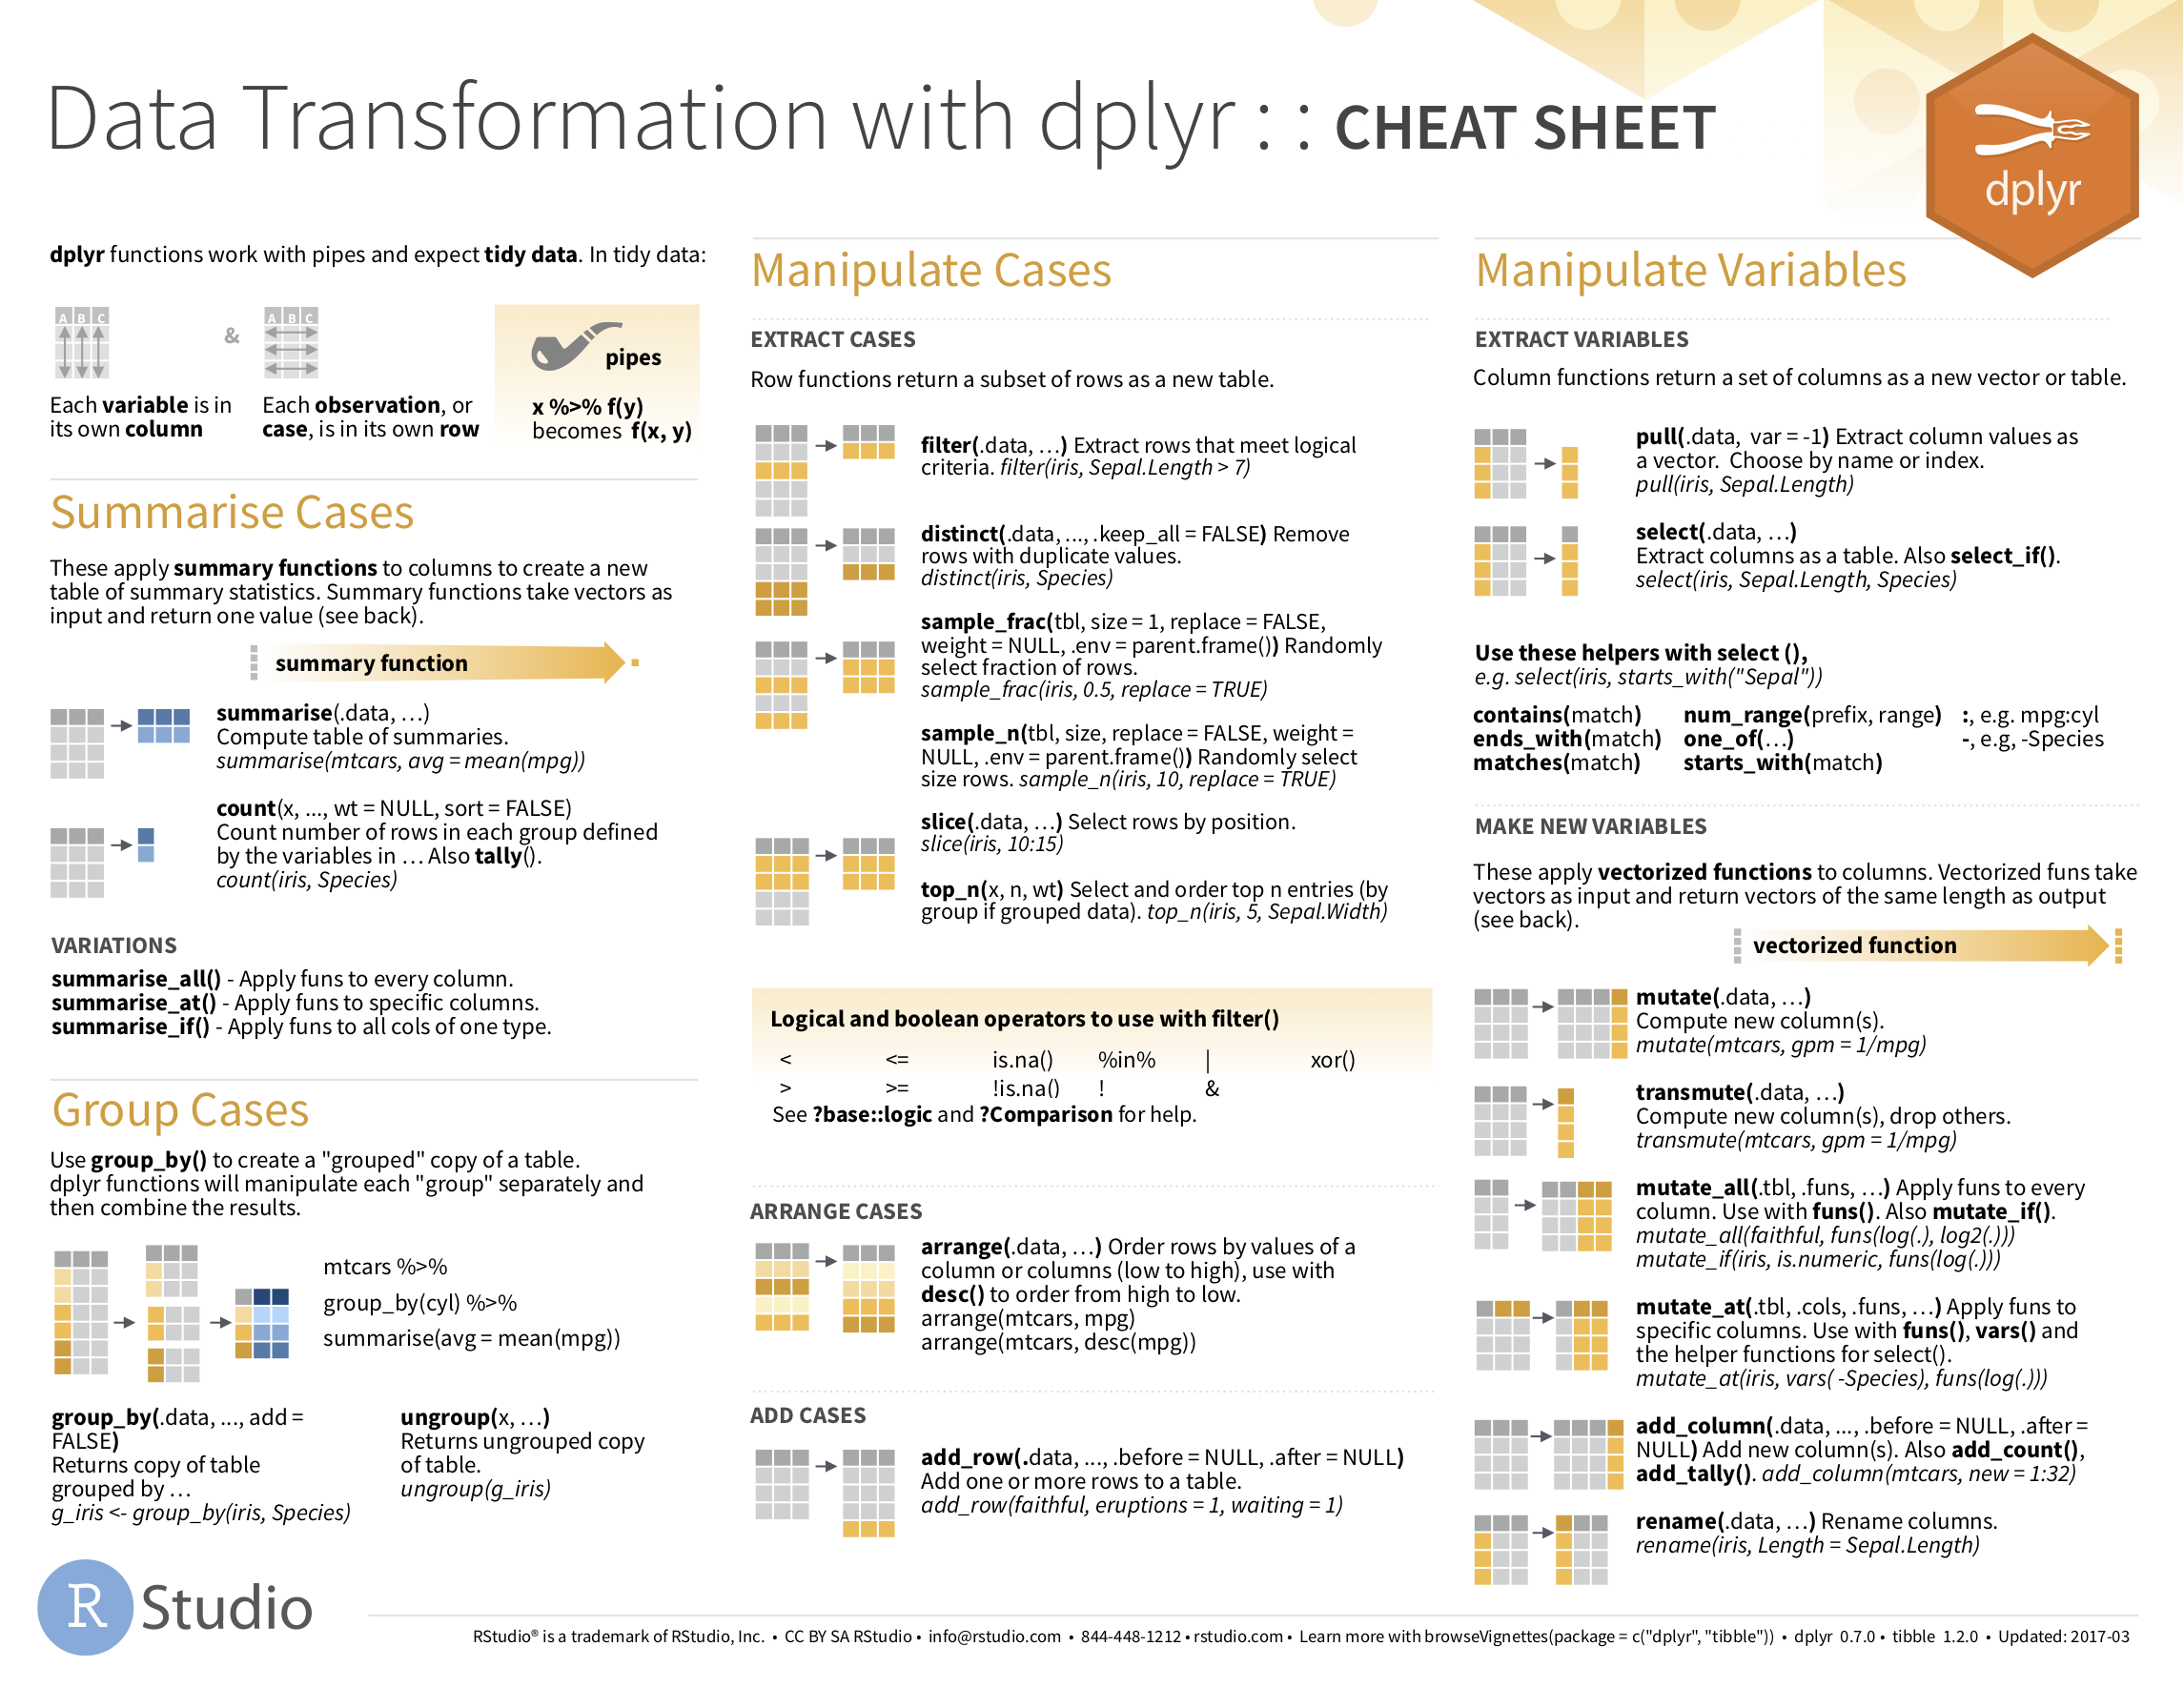 Data Transformation with dplyr cheatsheat